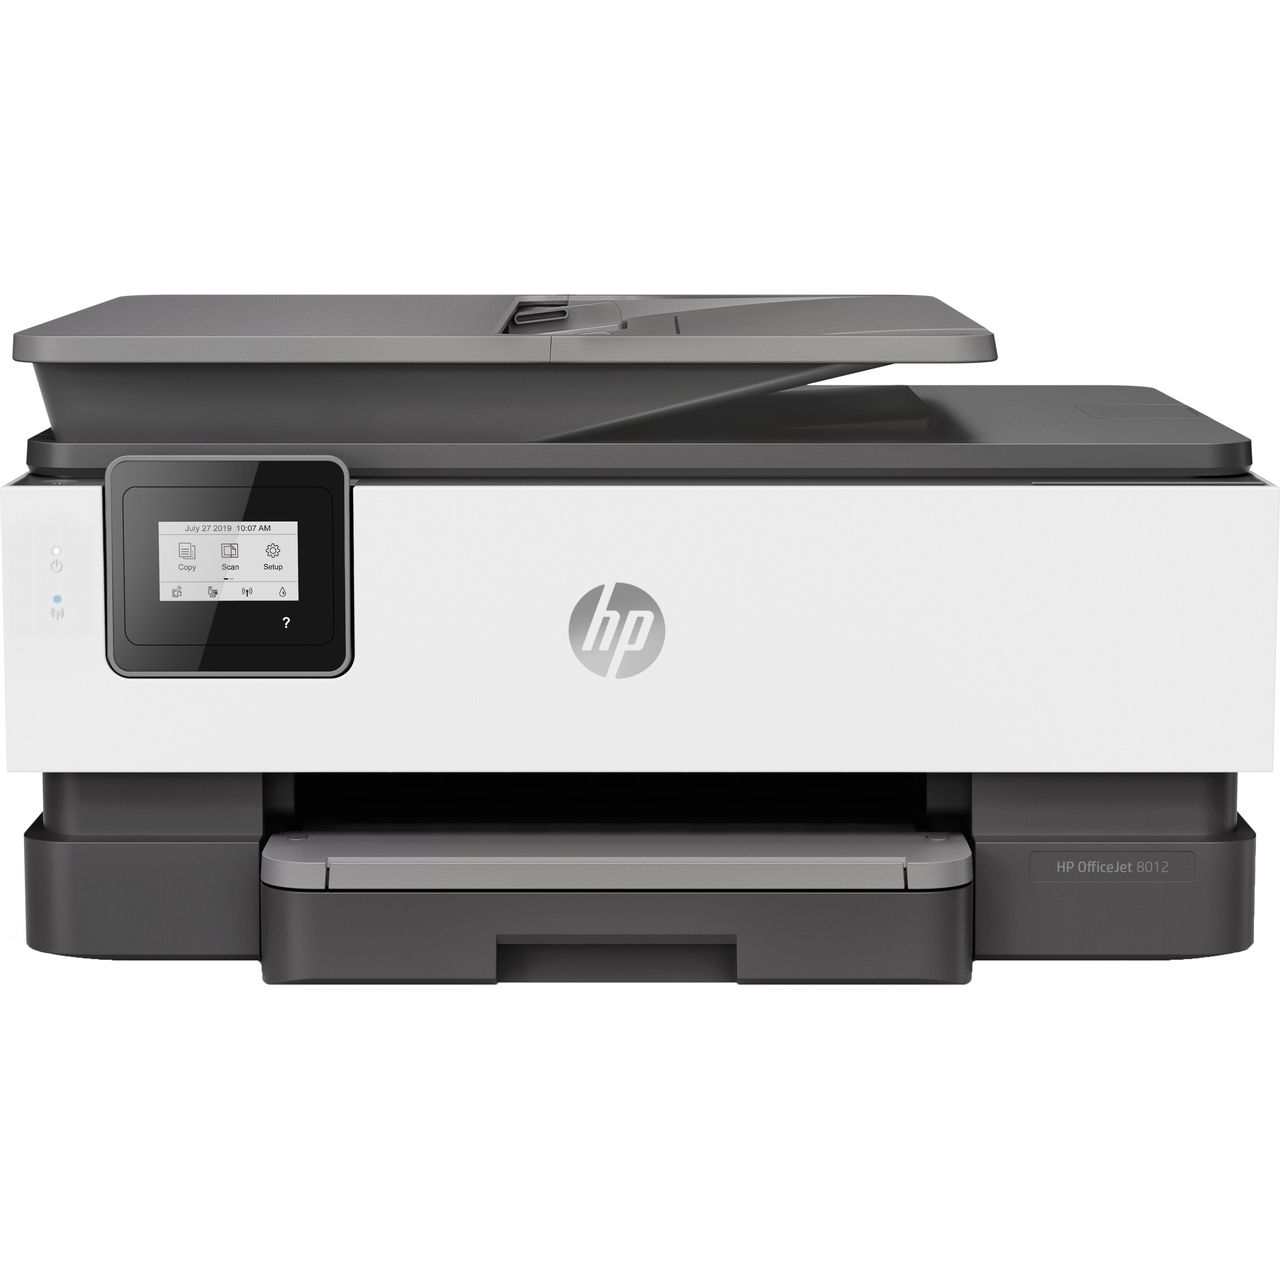 HP OfficeJet 8012 Inkjet Printer Review